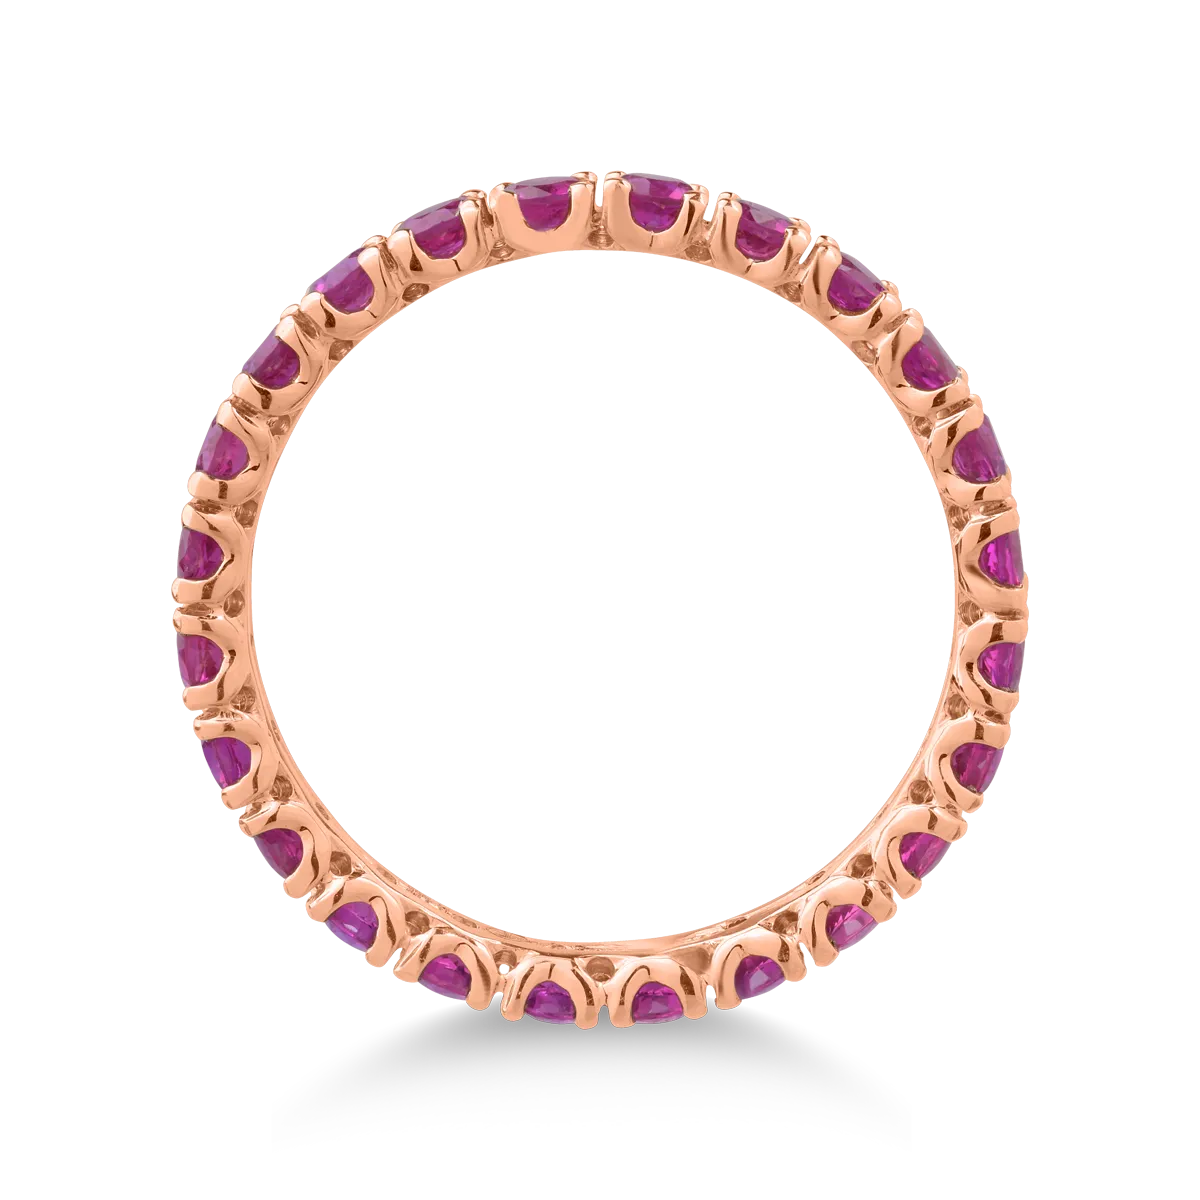 18 karátos rózsaszín arany gyűrű 1.55 karátos rubinokkal